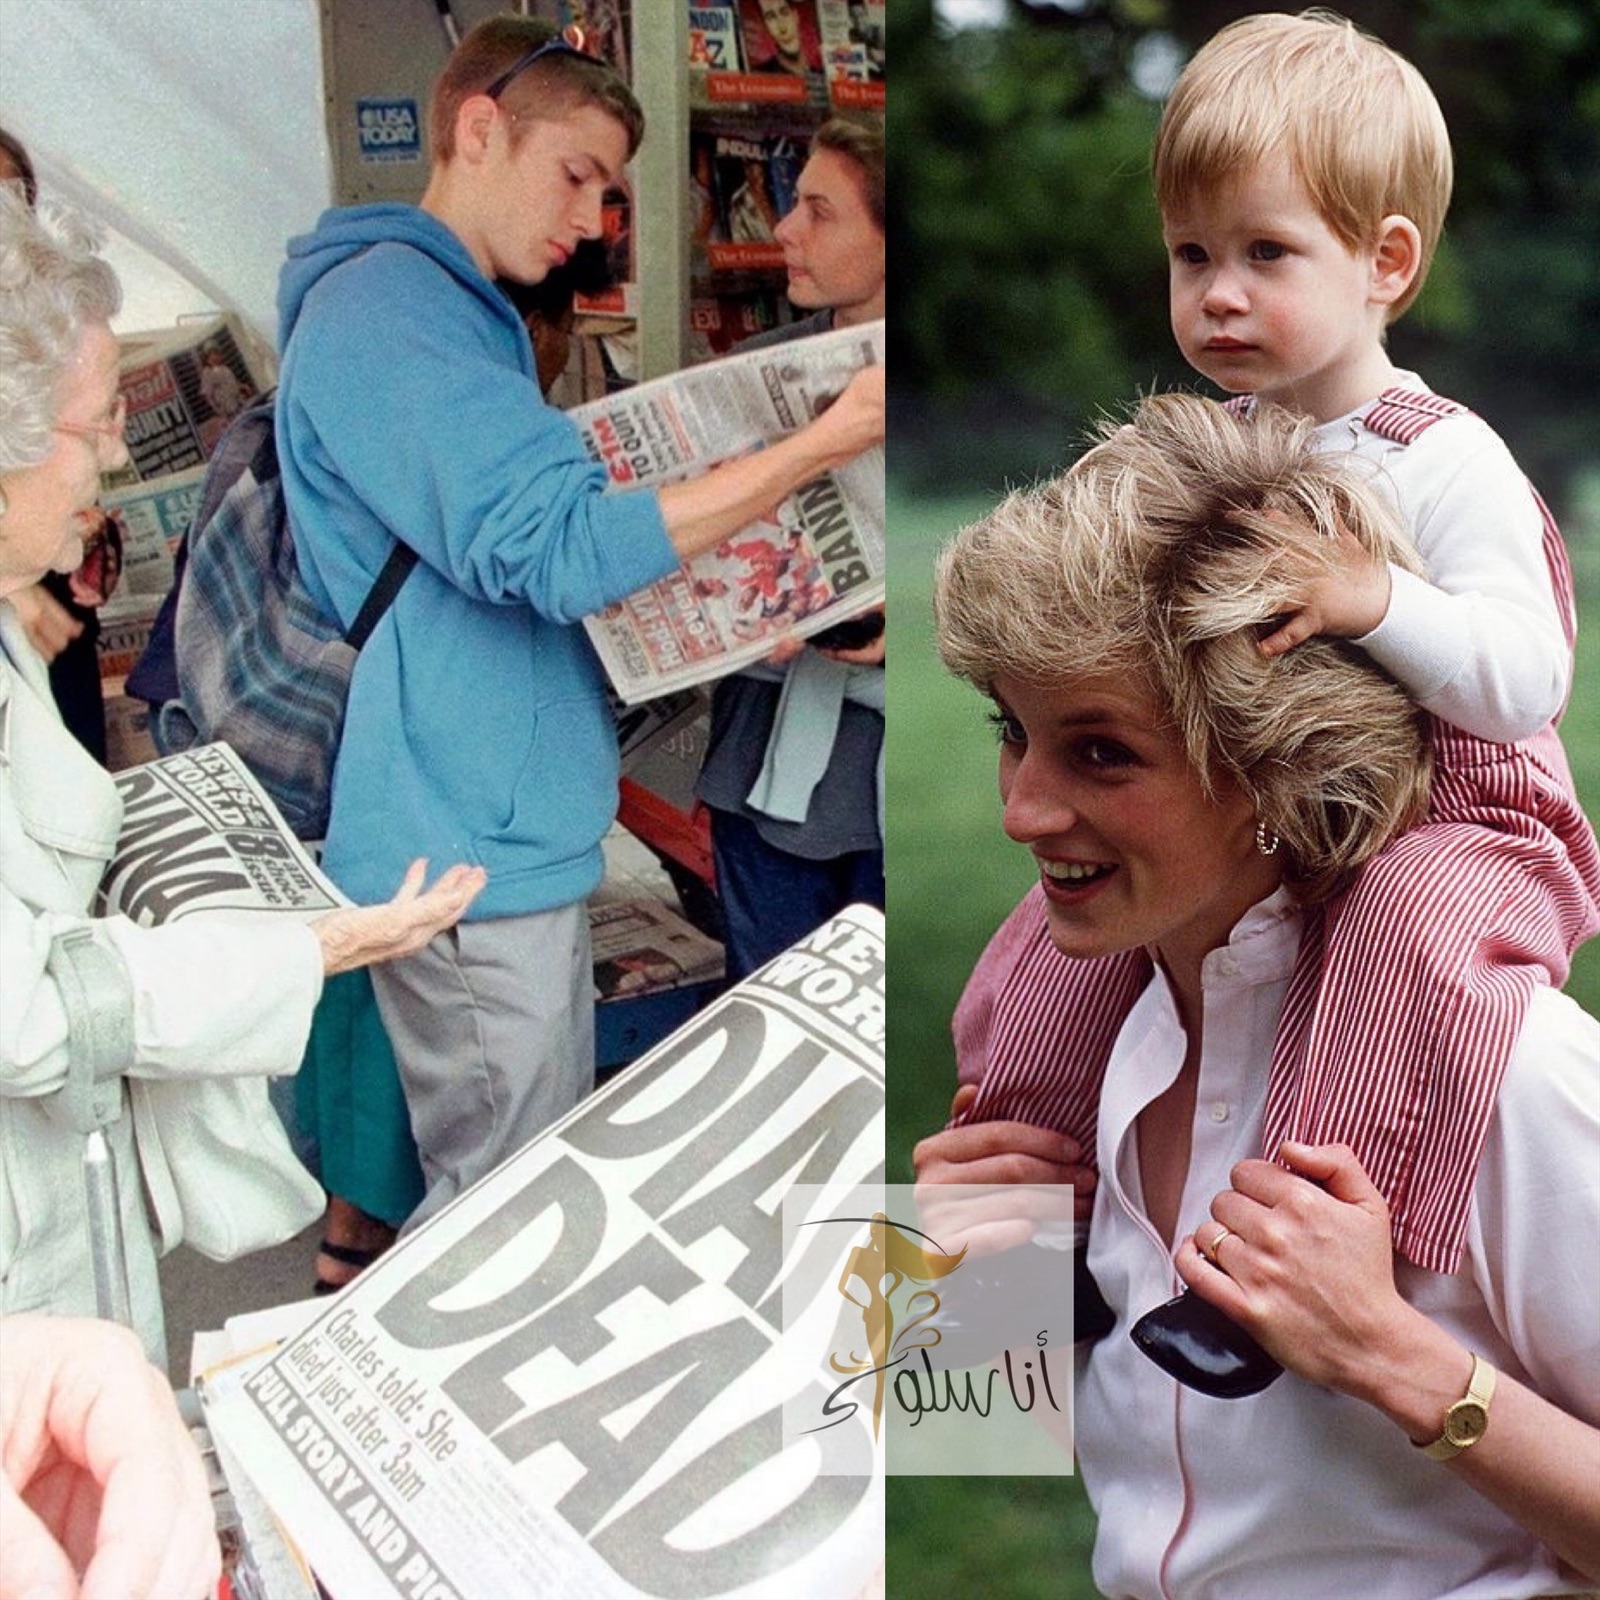 Vijfentwintig jaar sinds de moord op prinses Diana